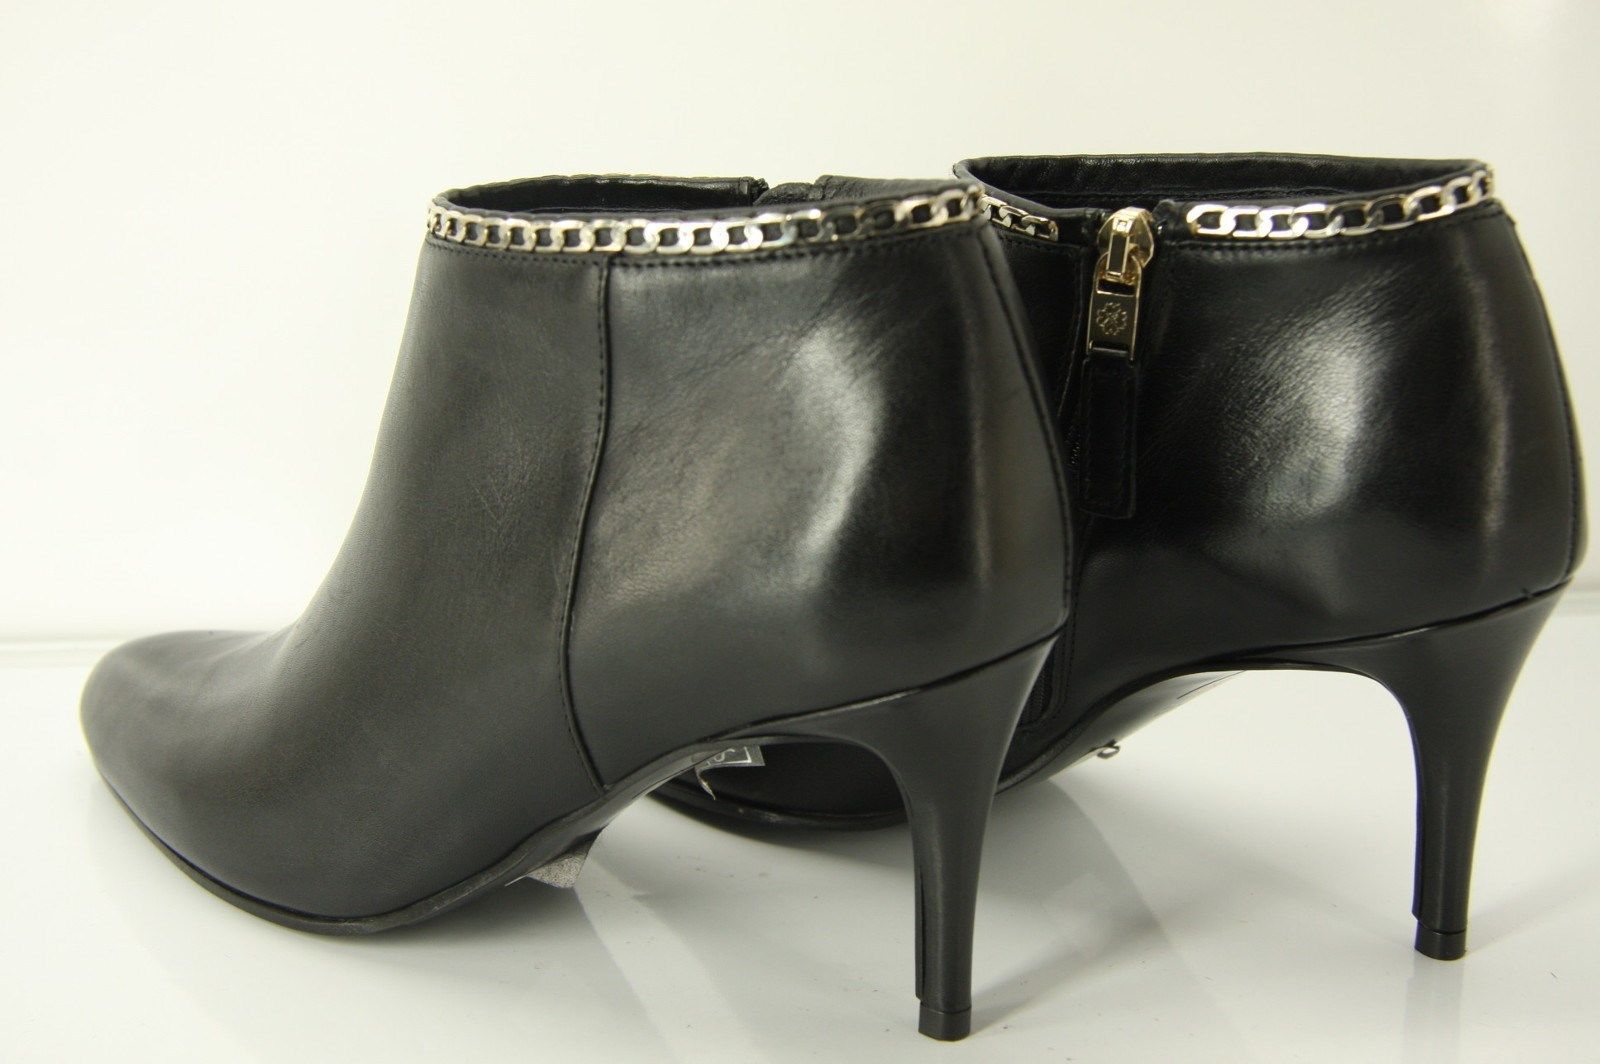 L.K. Bennett Dusty  Black Leather Size 7 Womens